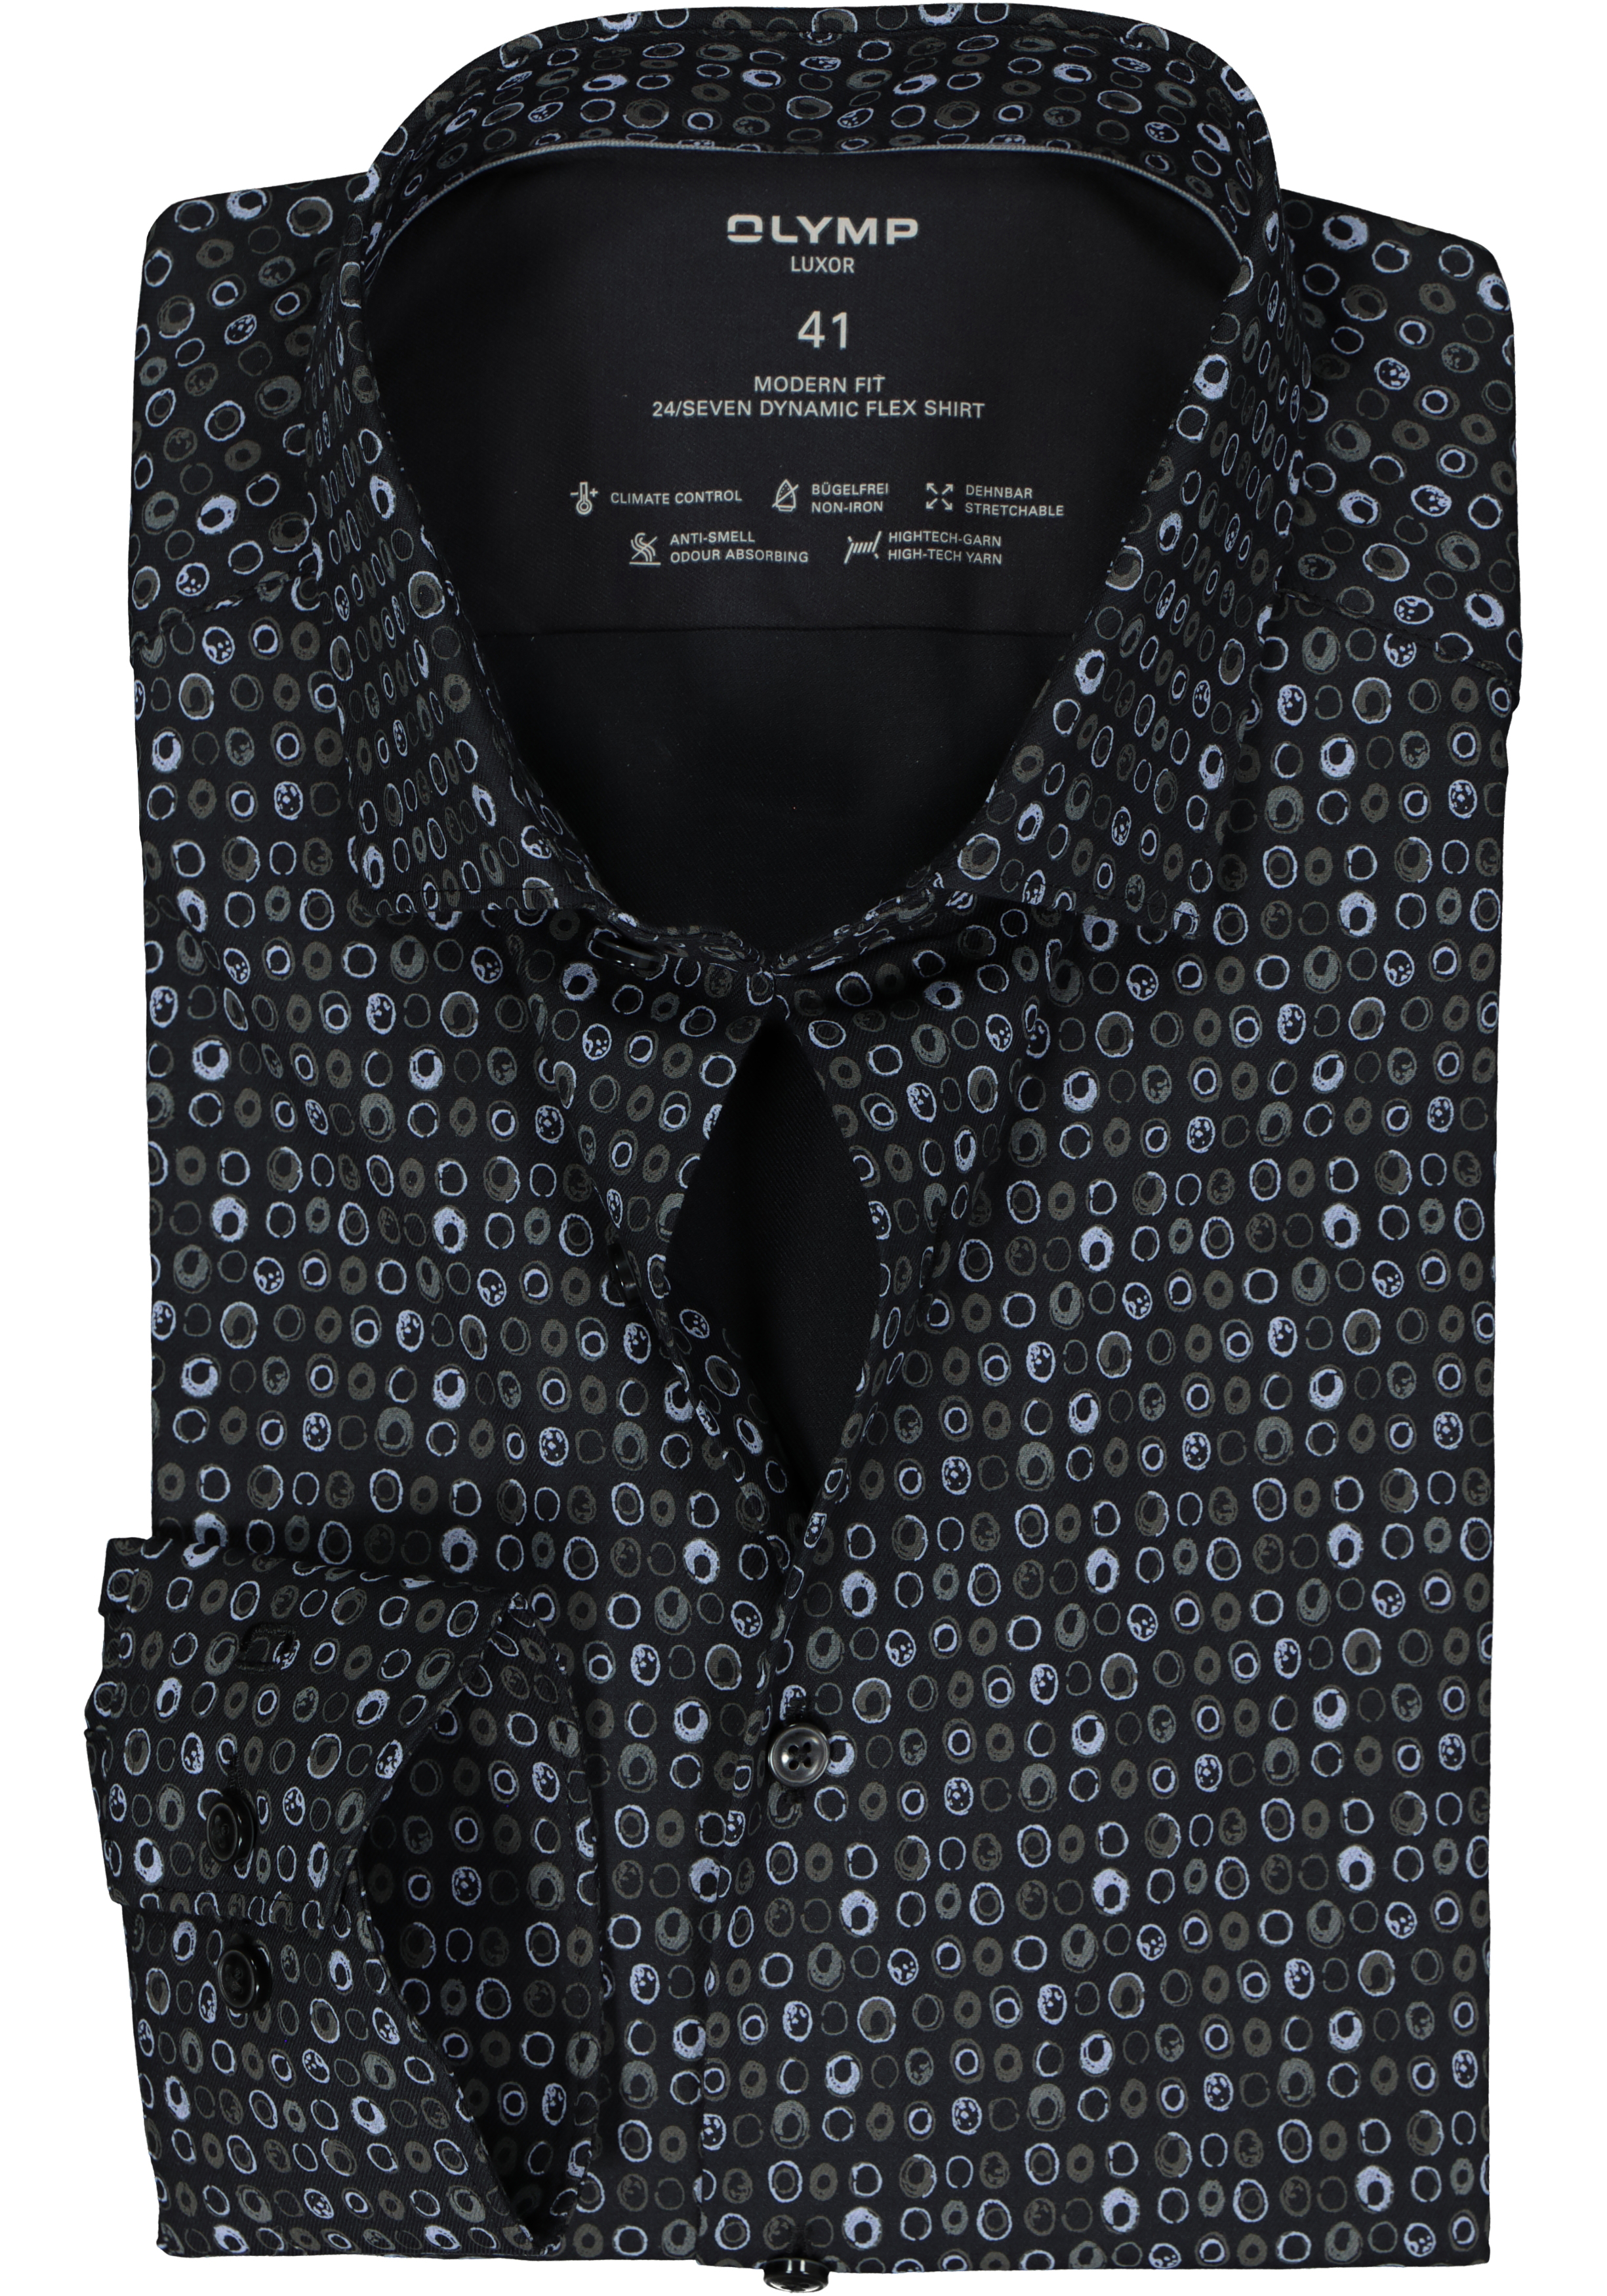 OLYMP 24/7 modern fit overhemd, twill, zwart met grijs en wit dessin